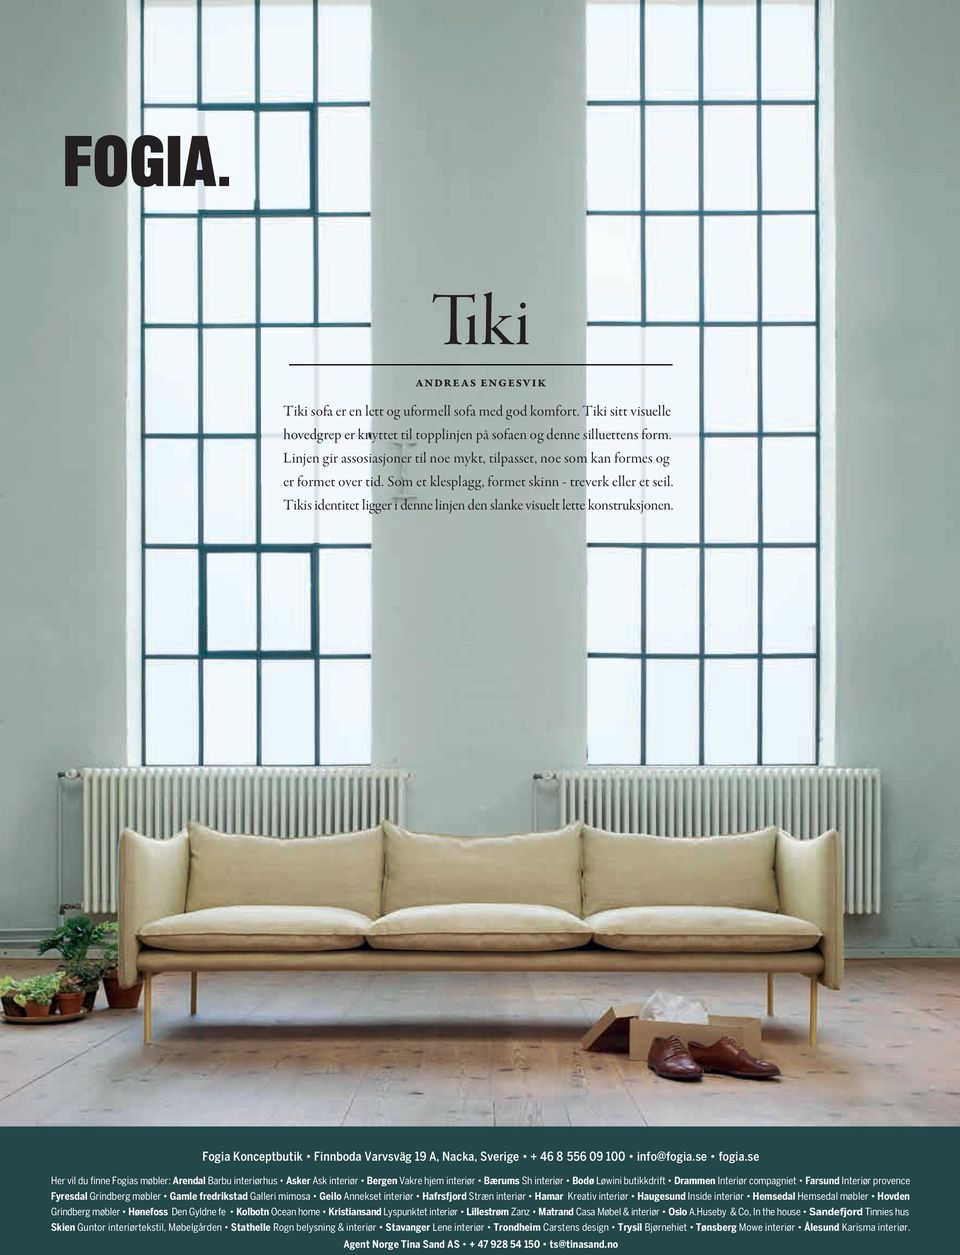 Tikis identitet ligger i denne linjen den slanke visuelt lette konstruksjonen. Fogia Konceptbutik Finnboda Varvsväg 19 A, Nacka, Sverige + 46 8 556 09 100 info@fogia.se fogia.